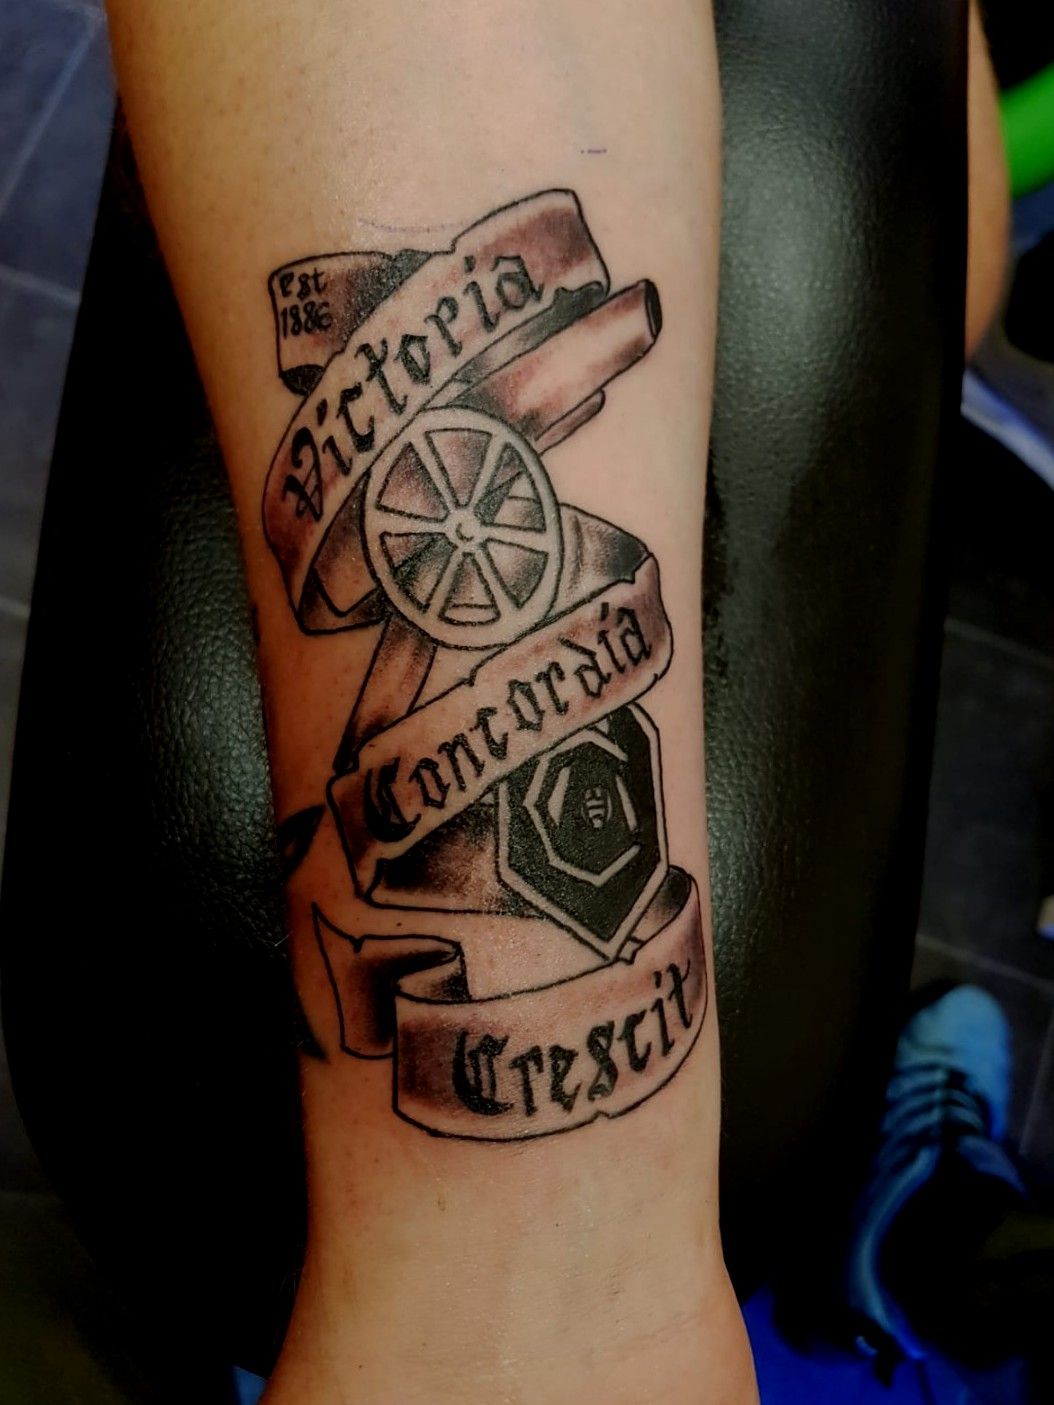 14 Arsenal tattoos ideas  arsenal tattoo arsenal tattoos